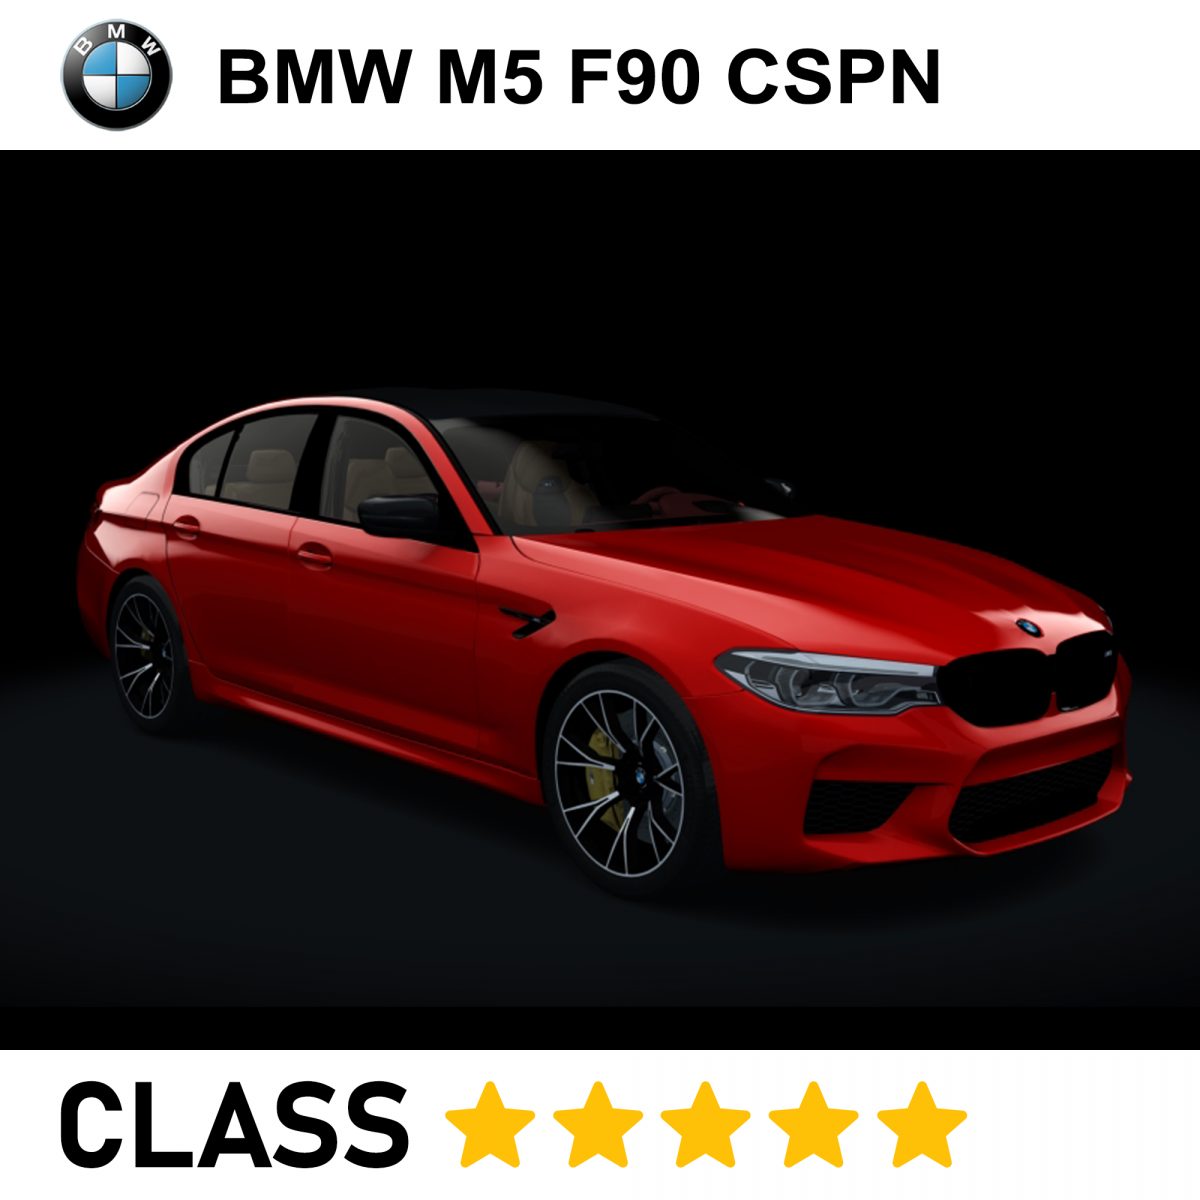 BMW M5 F90 CSPN